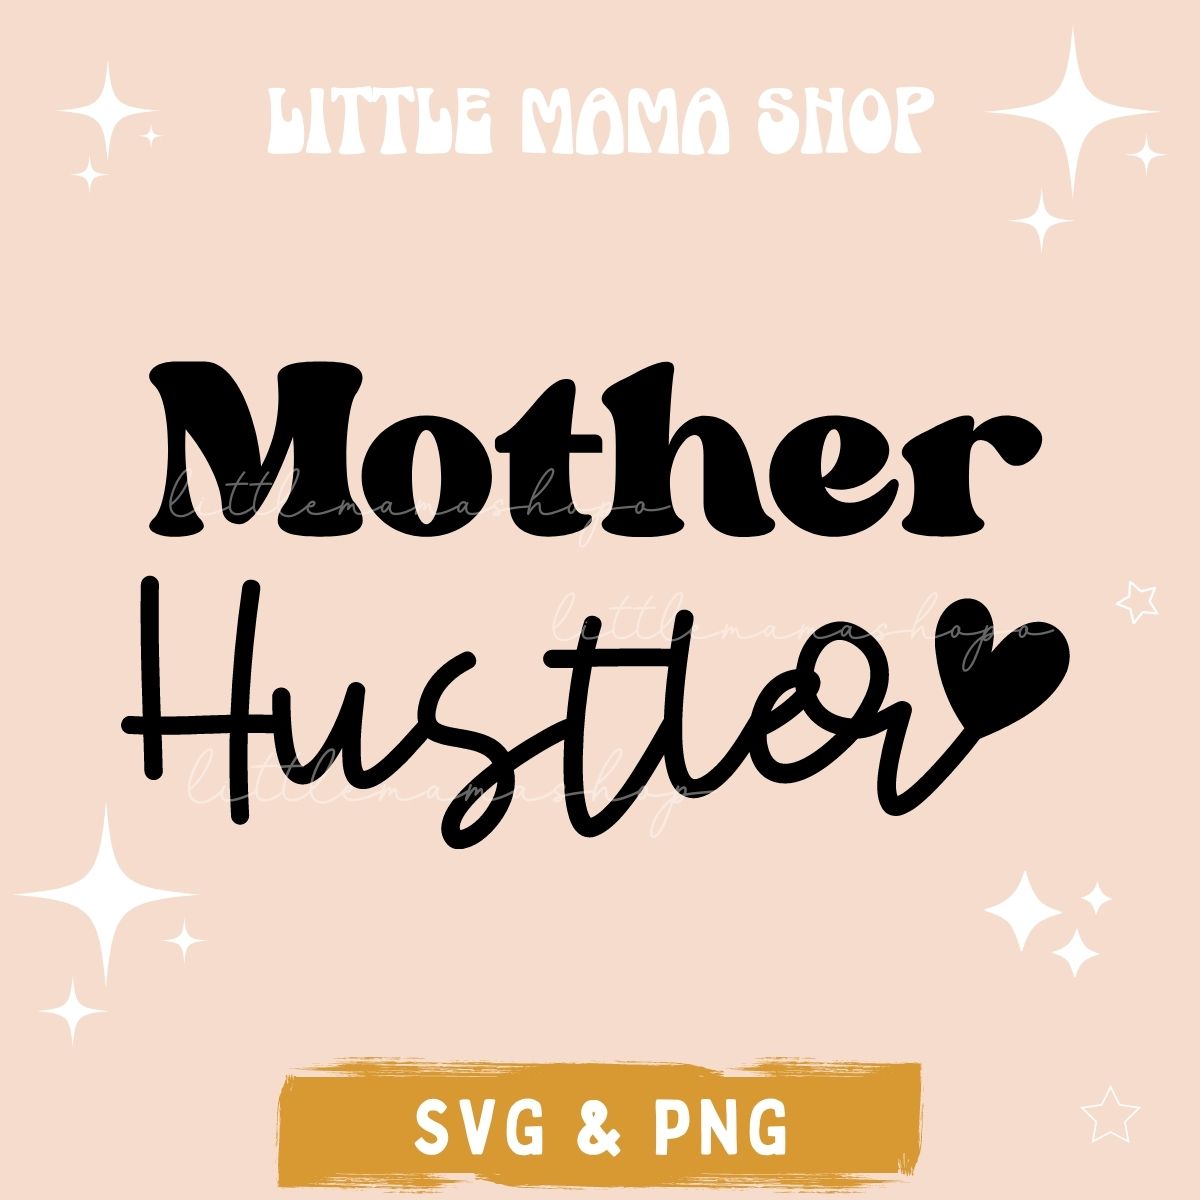 Mother Hustler Free SVG